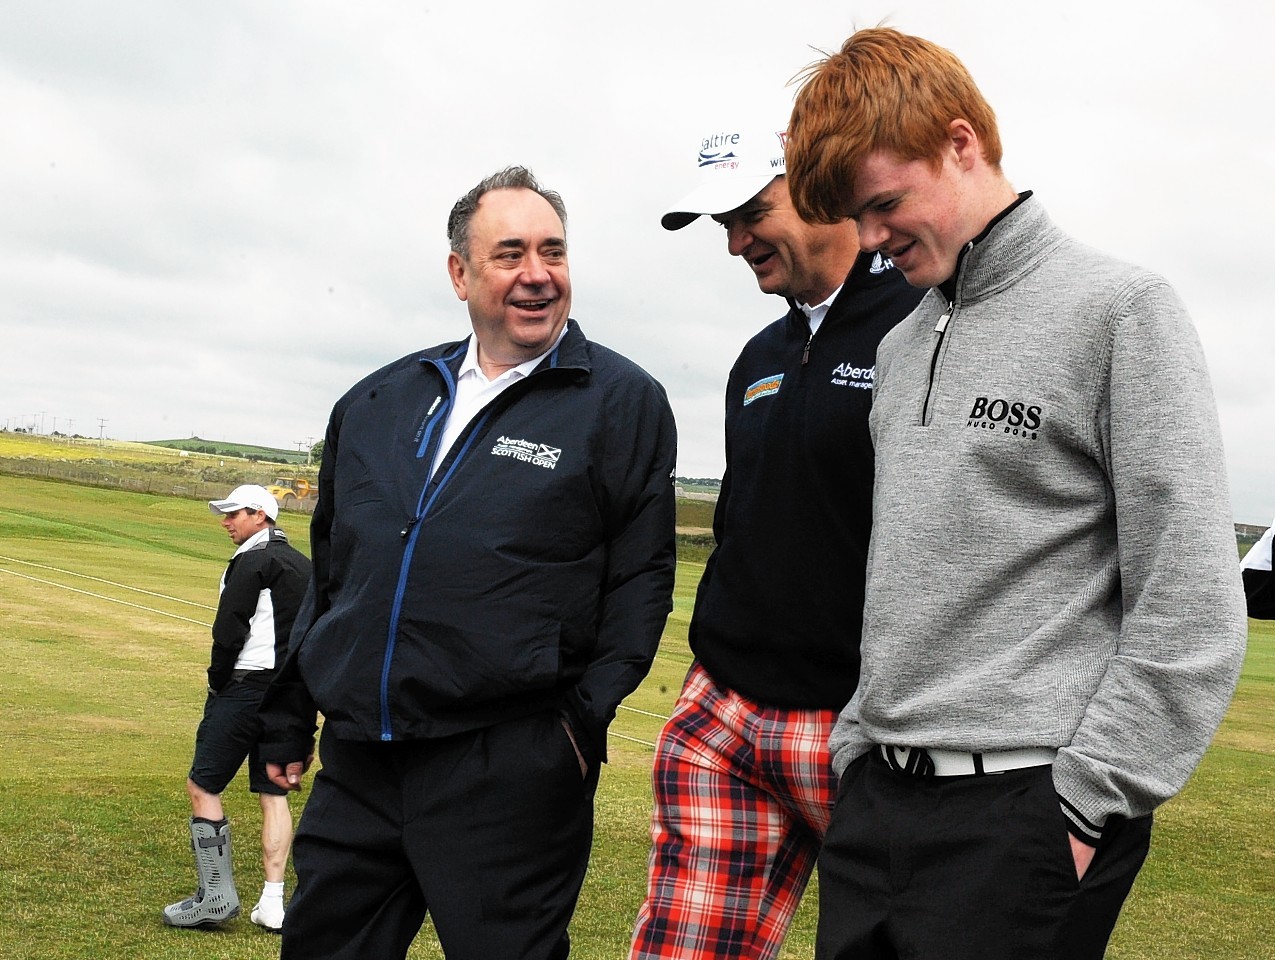 First Minister, Alex Salmond with Paul Lawrie at Murcar golf club, Aberdeen.